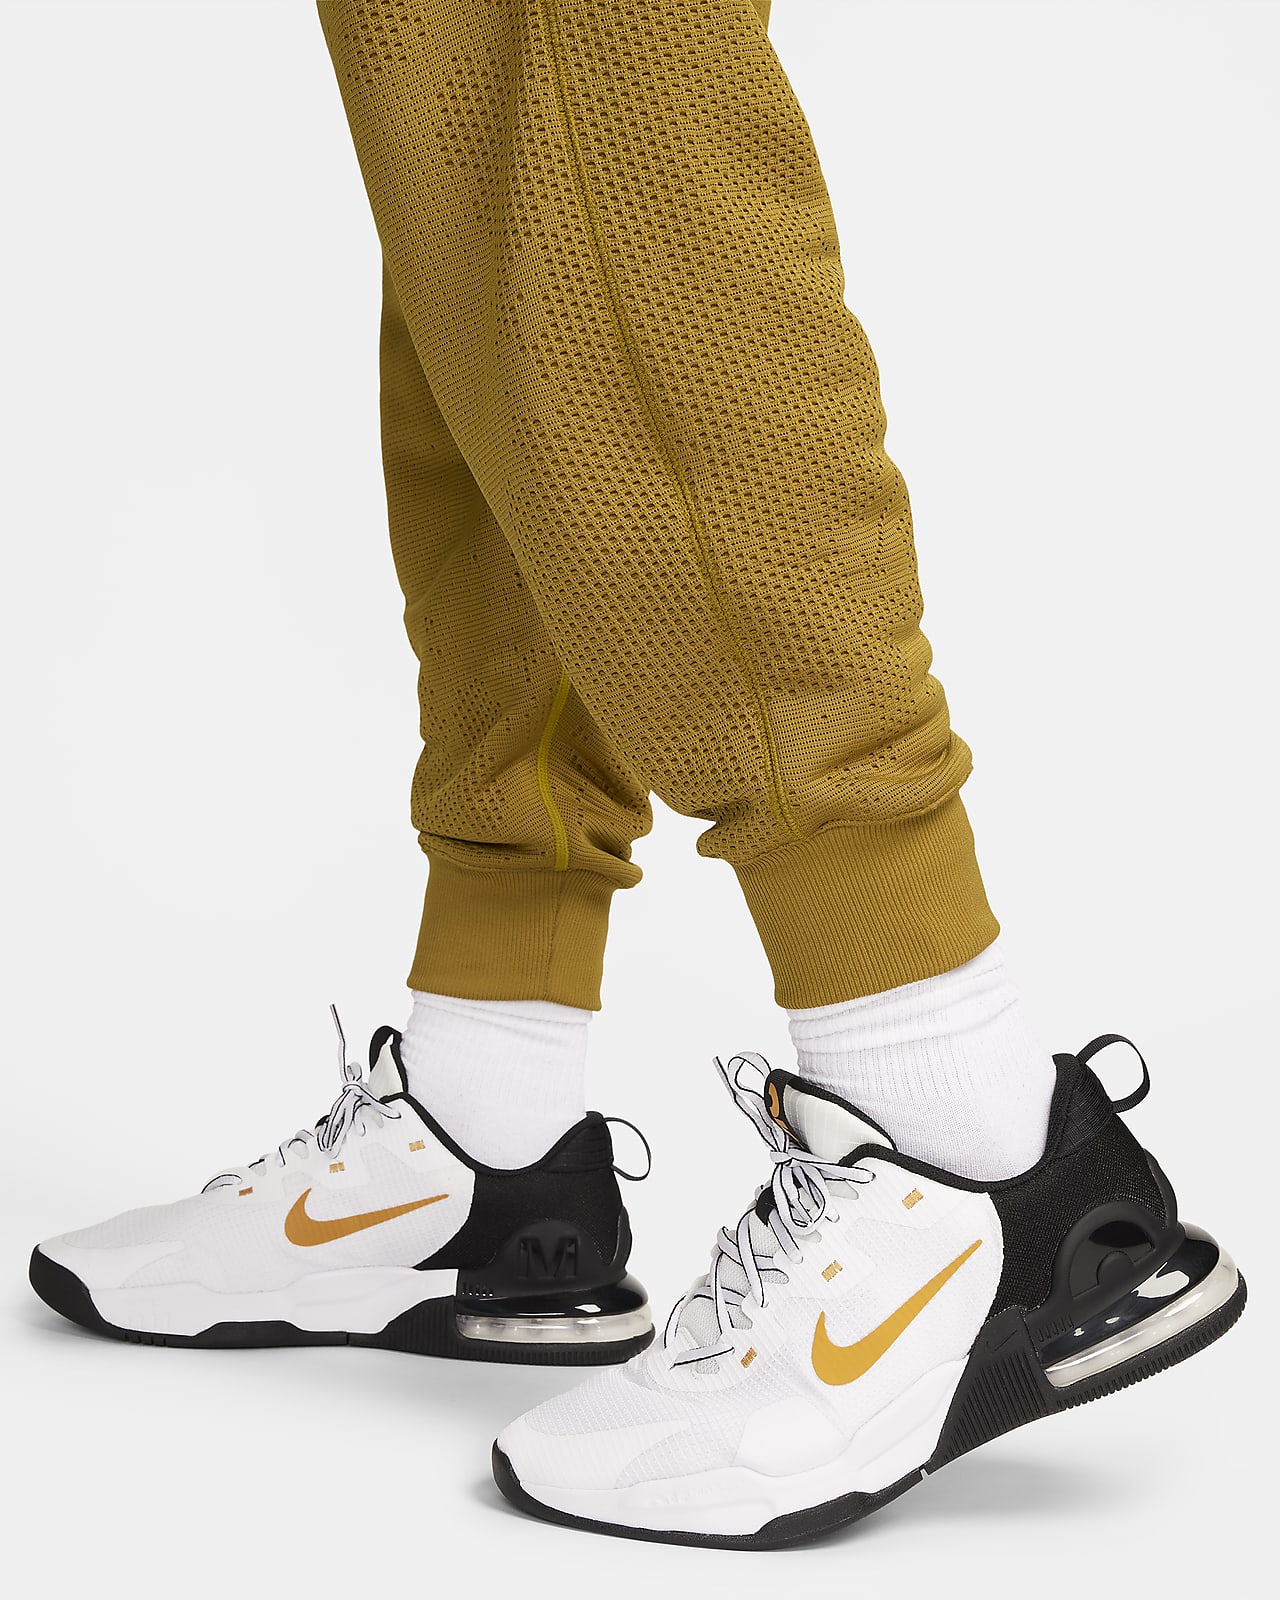 Nike APS Men's Therma-FIT Versatile Trousers. Nike CA